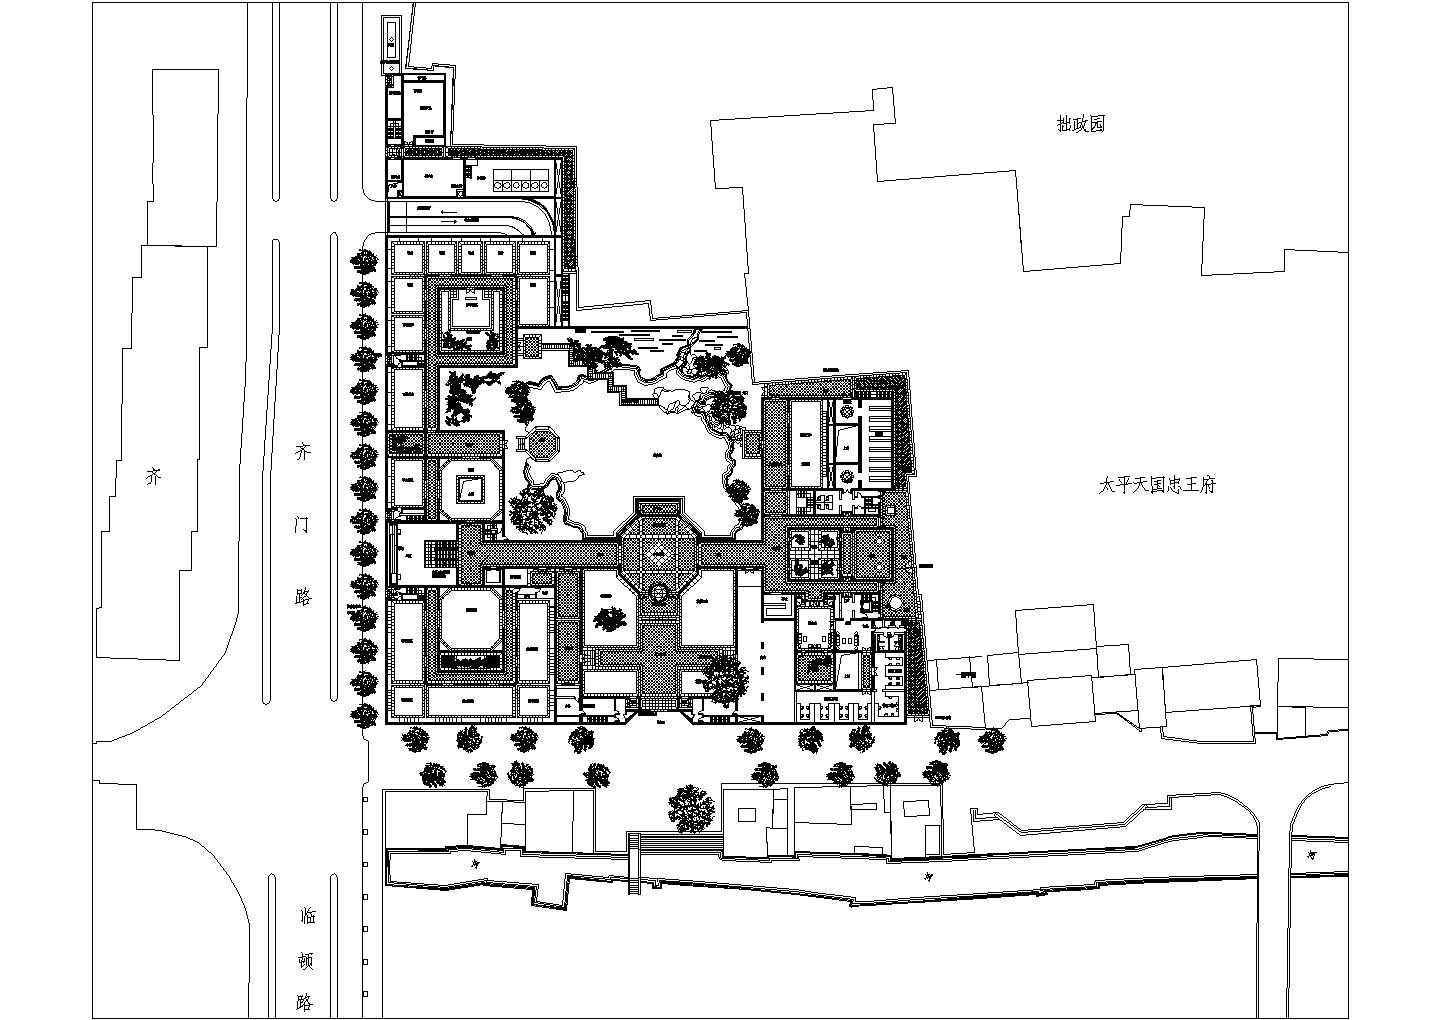 苏州博物馆整体建筑规划设计方案图纸